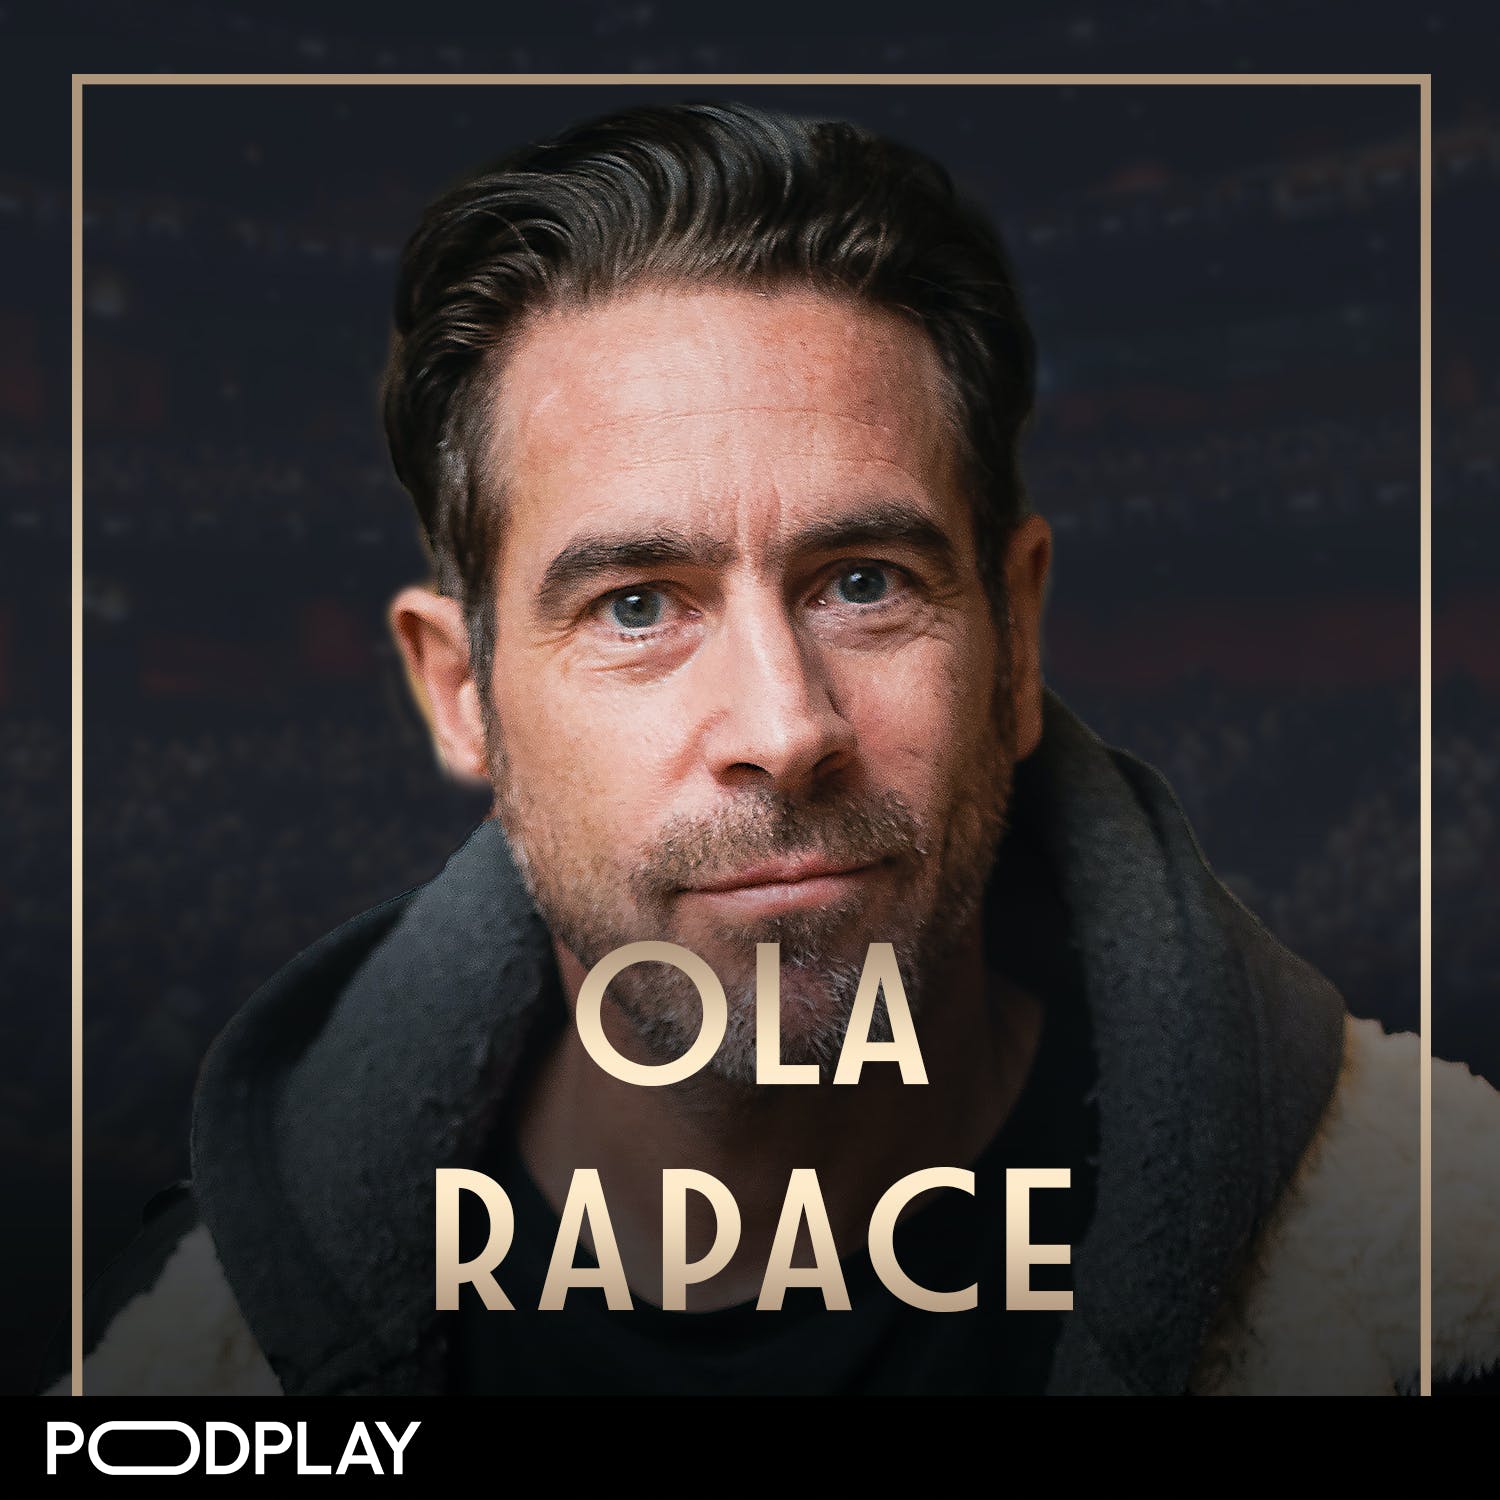 479. Ola Rapace - Om att försöka uppfinna sig själv på nytt, kraften av att lyssna och att spela olika roller genom livet, Original